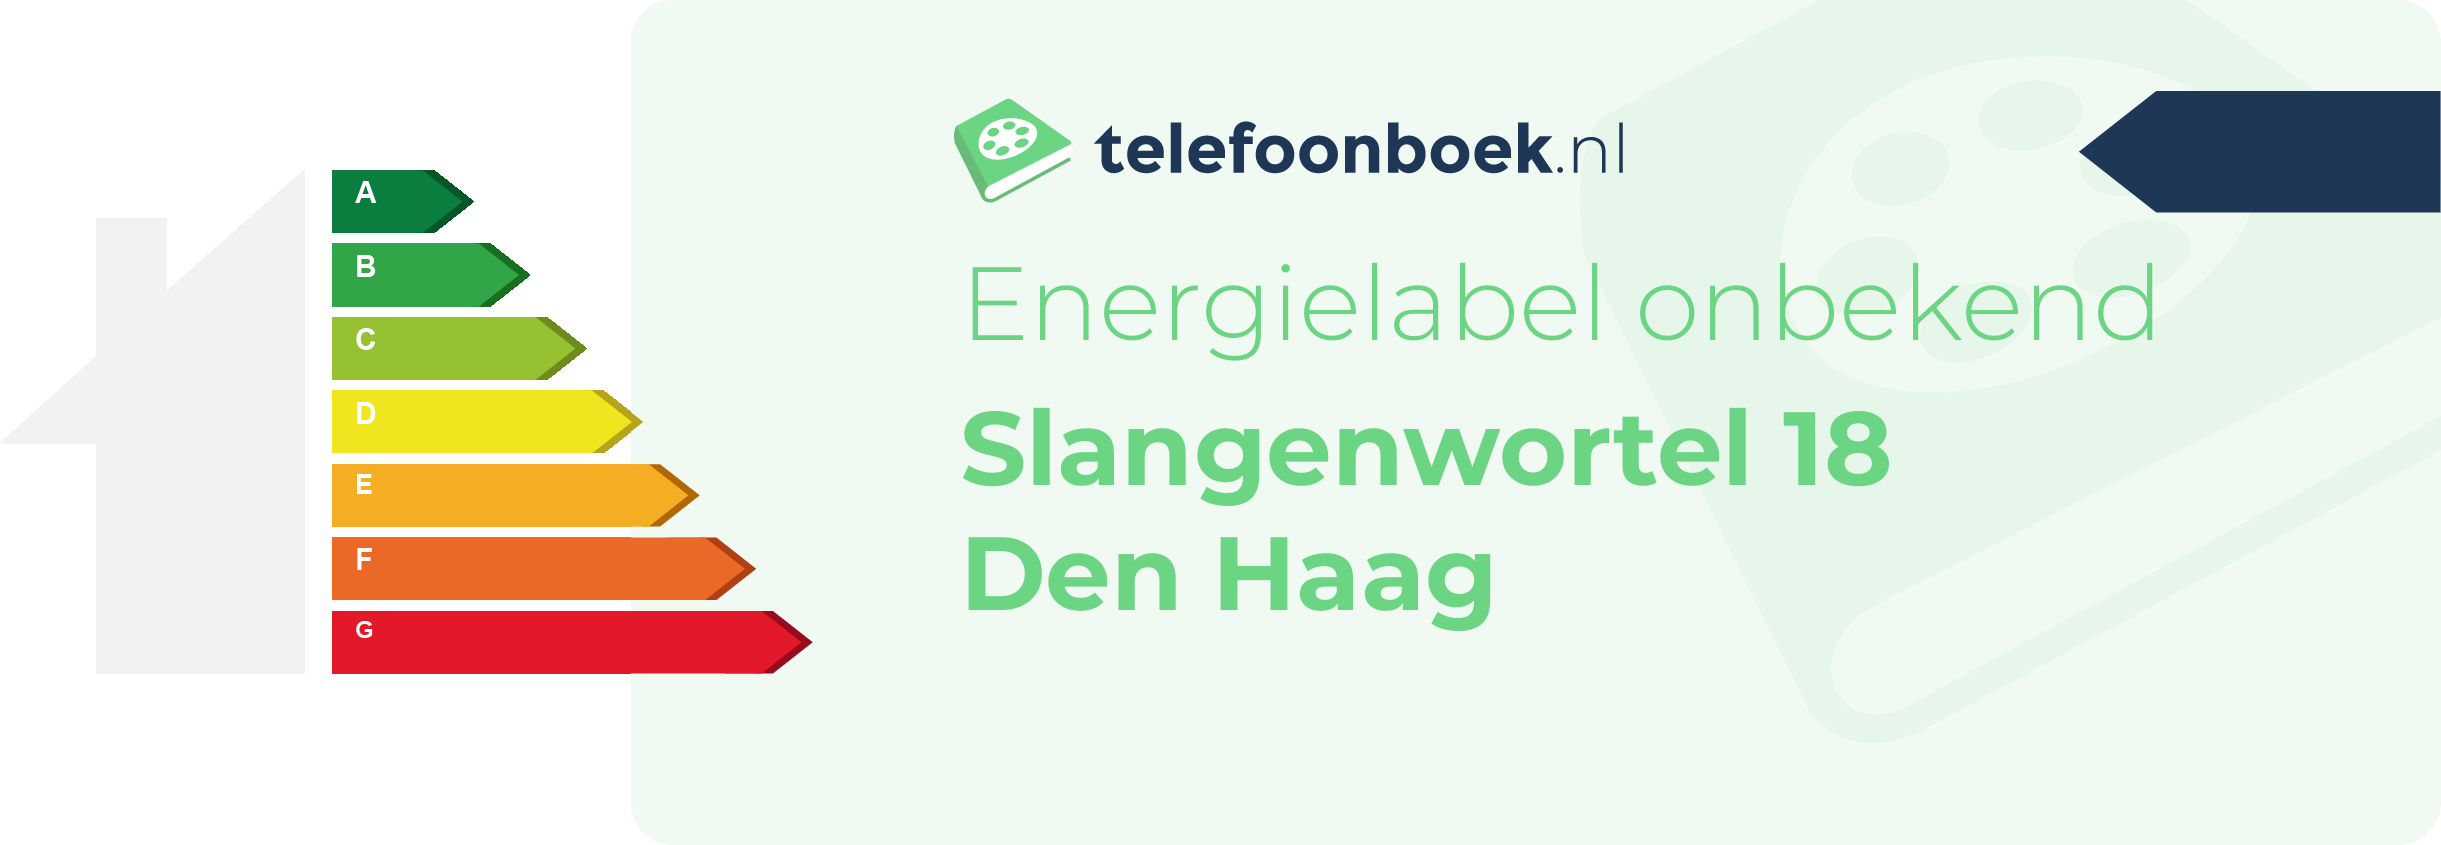 Energielabel Slangenwortel 18 Den Haag